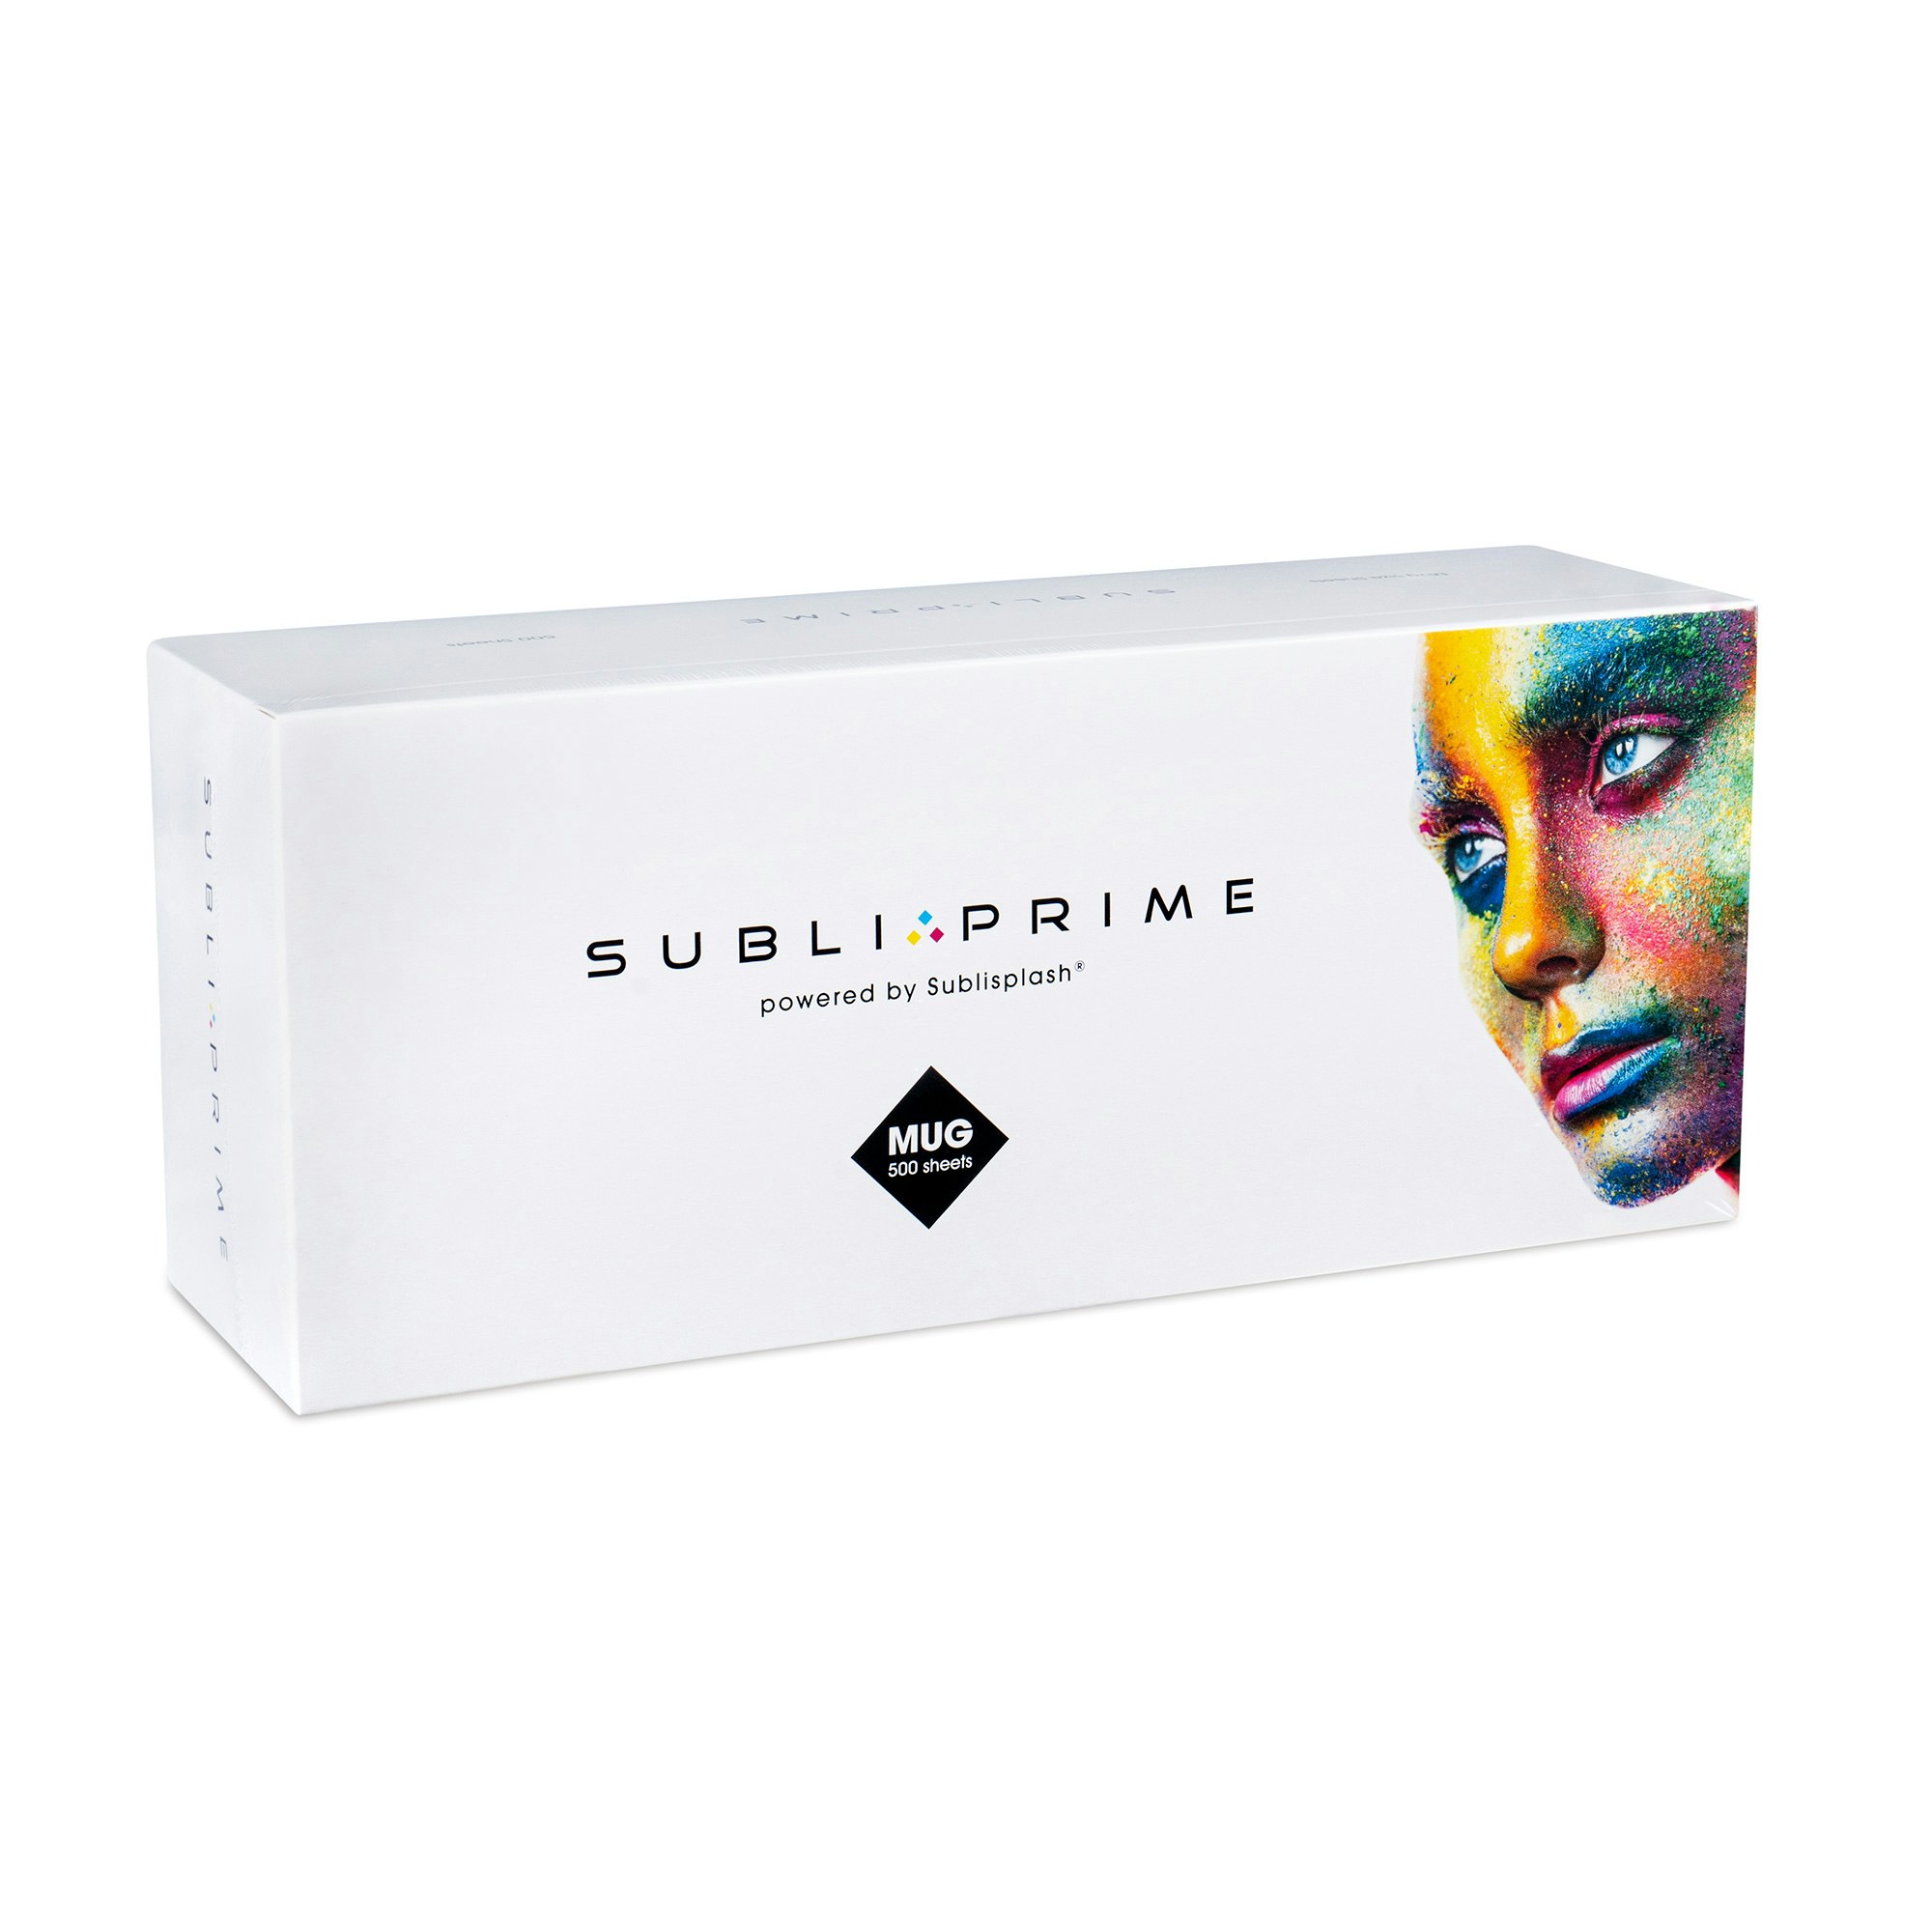 SubliPrime Sublimation Papper, Mugg 500-pack